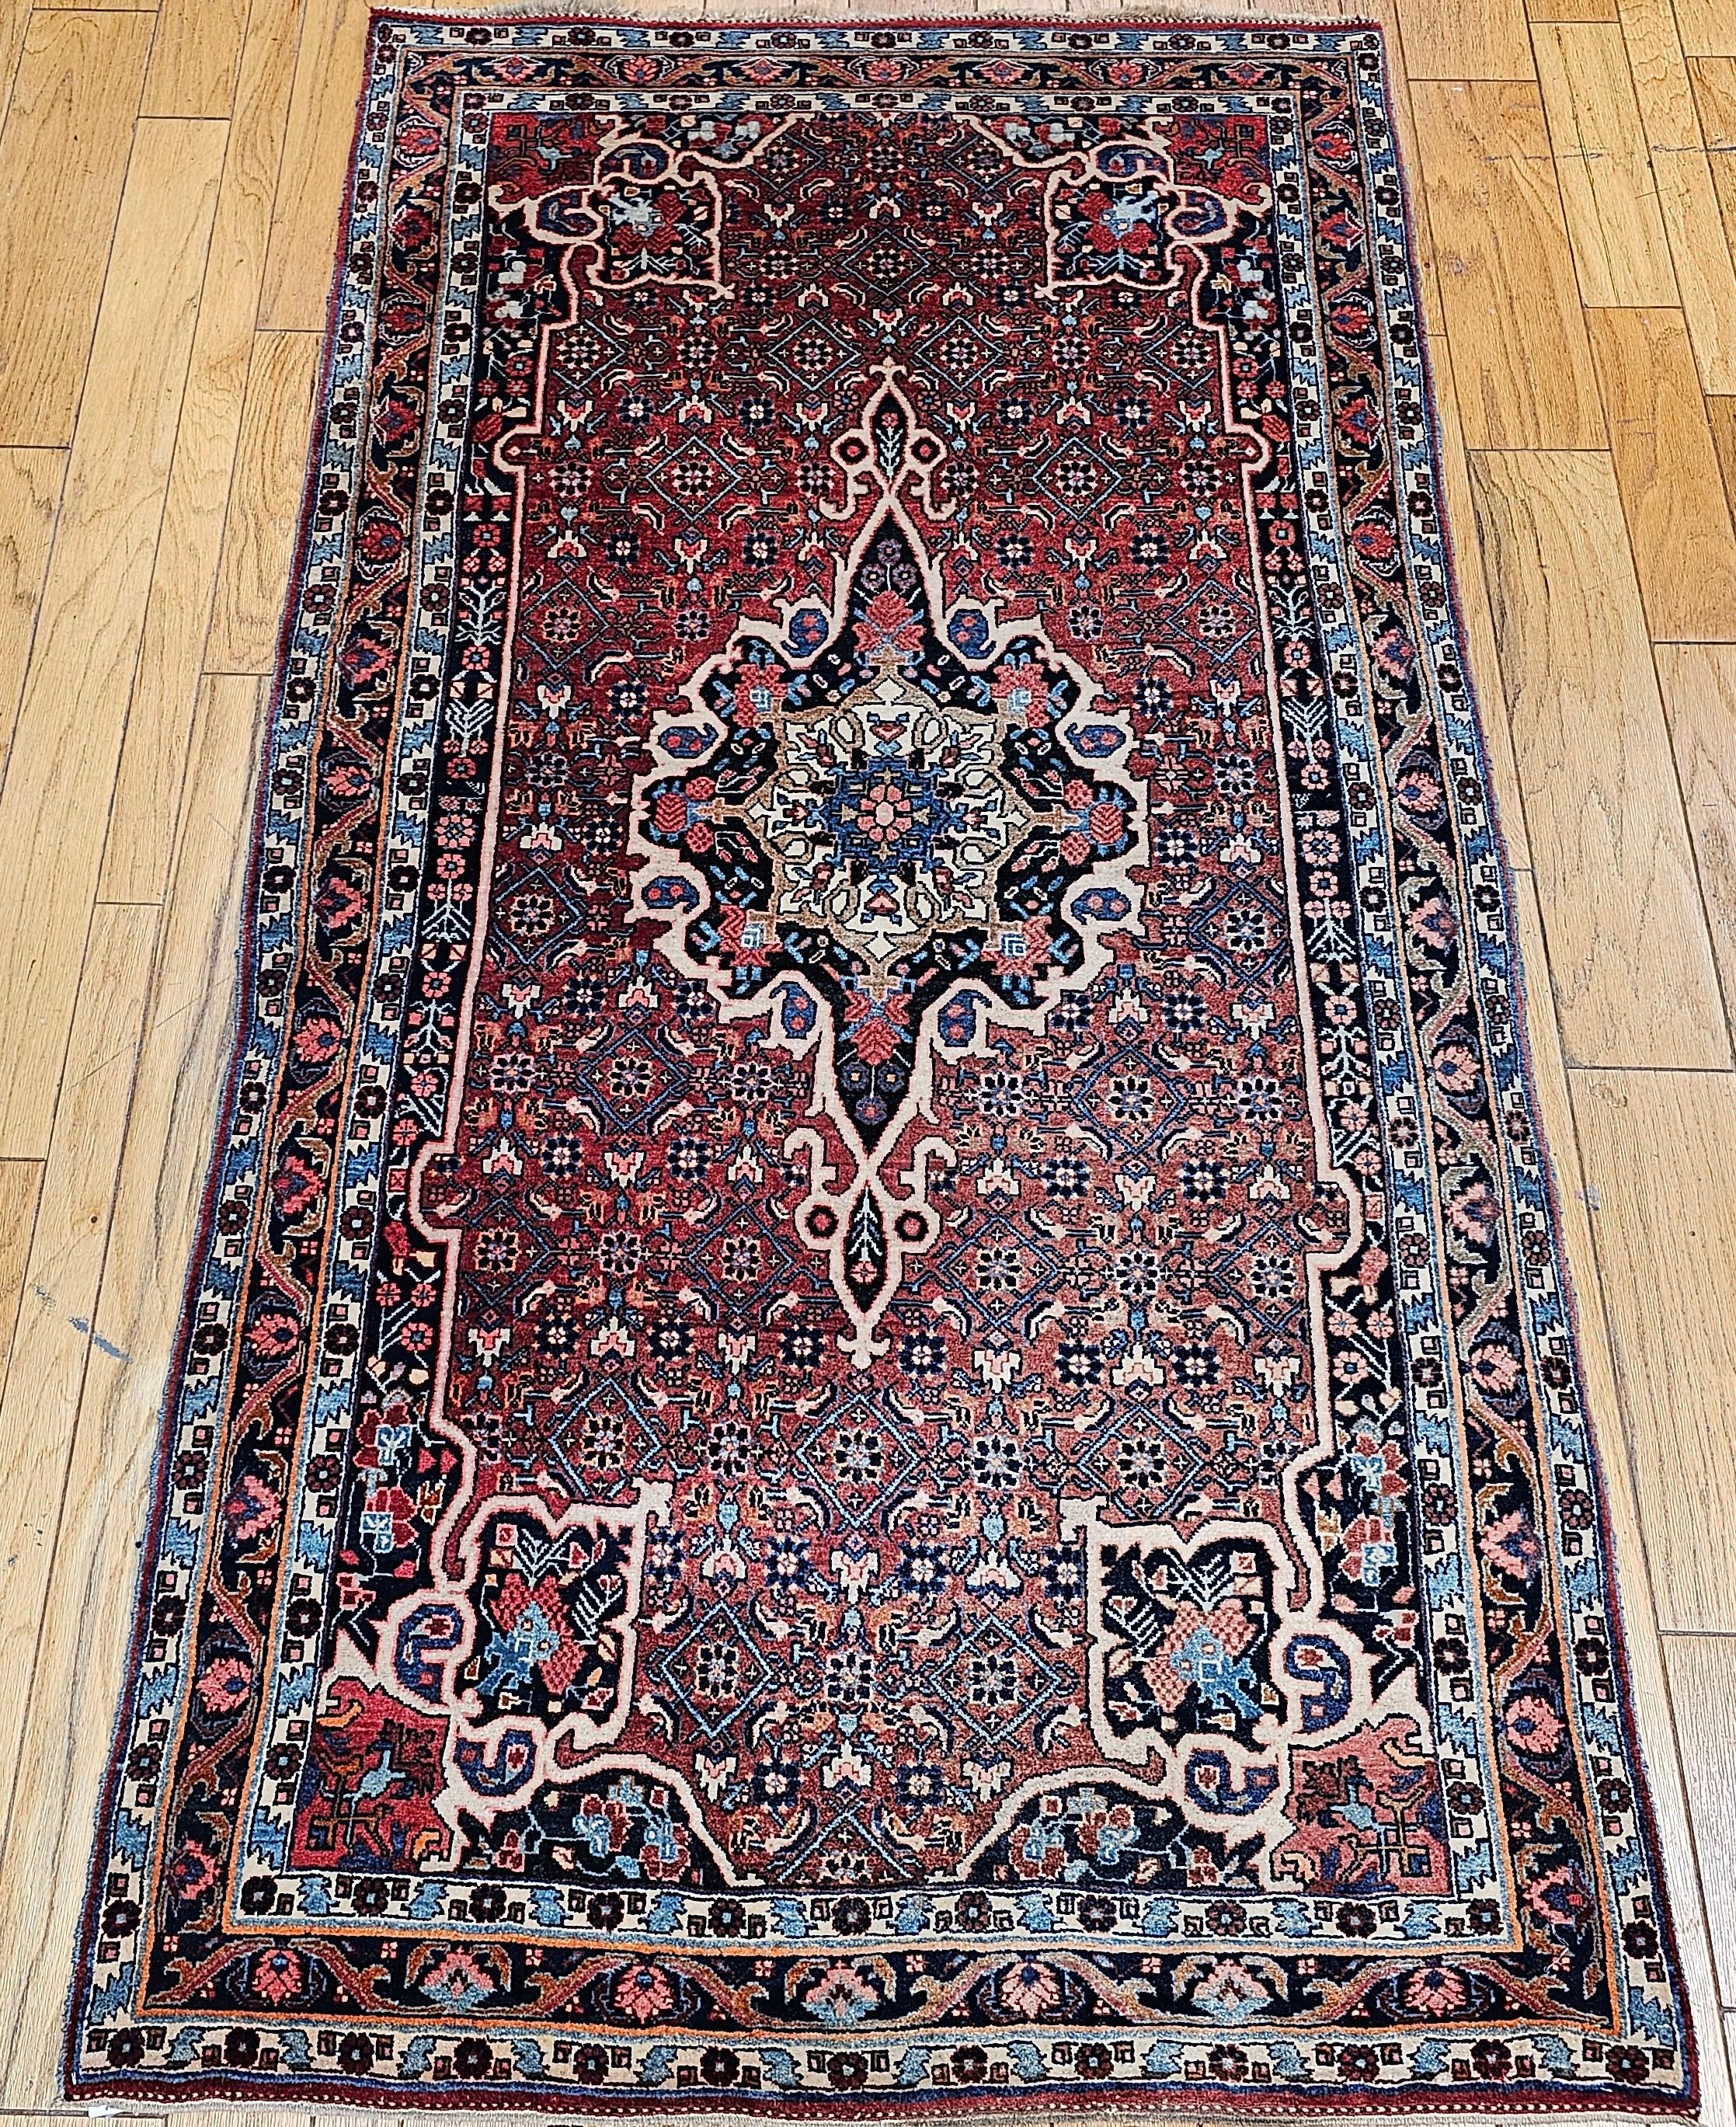  Tapis de galerie (a Gallery) (corridor) vintage persan de Byjar (Bijar) à motif floral en médaillon, tissé au début des années 1900.  Le tapis Bidjar (Bijar) présente un champ de couleur rouge ou rouille avec un motif géométrique Herati.  Les